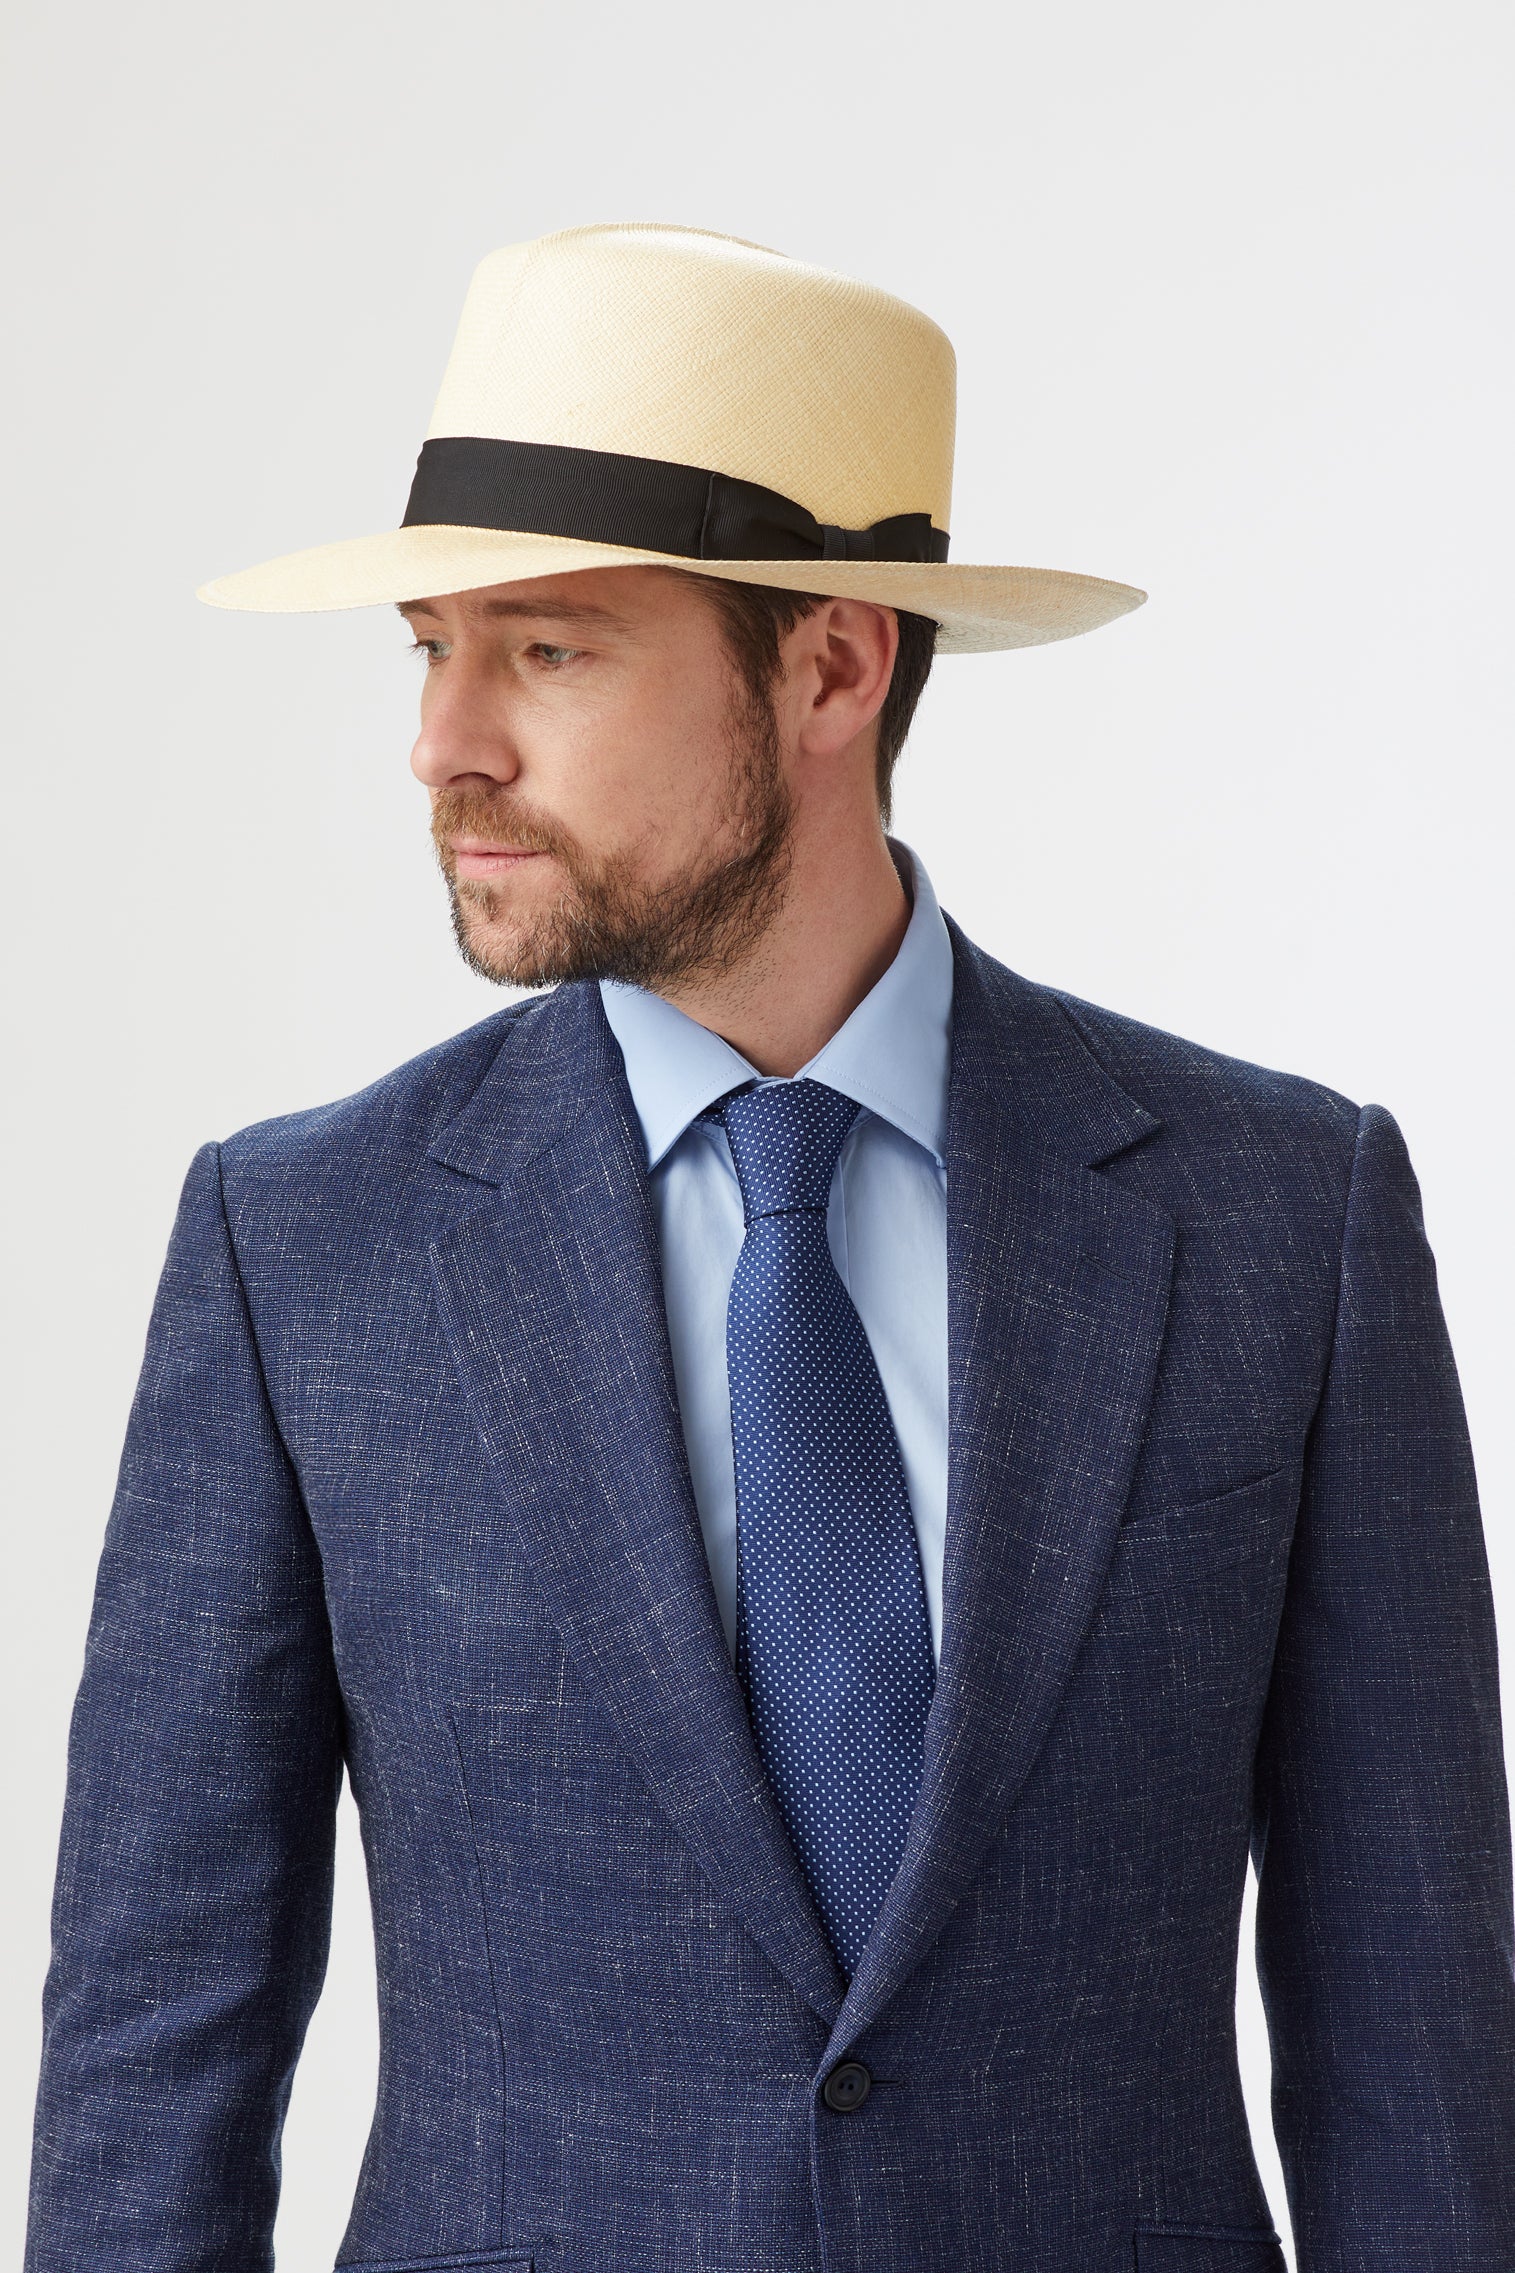 Men's Rollable Panama - Best Selling Hats - Lock & Co. Hatters London UK